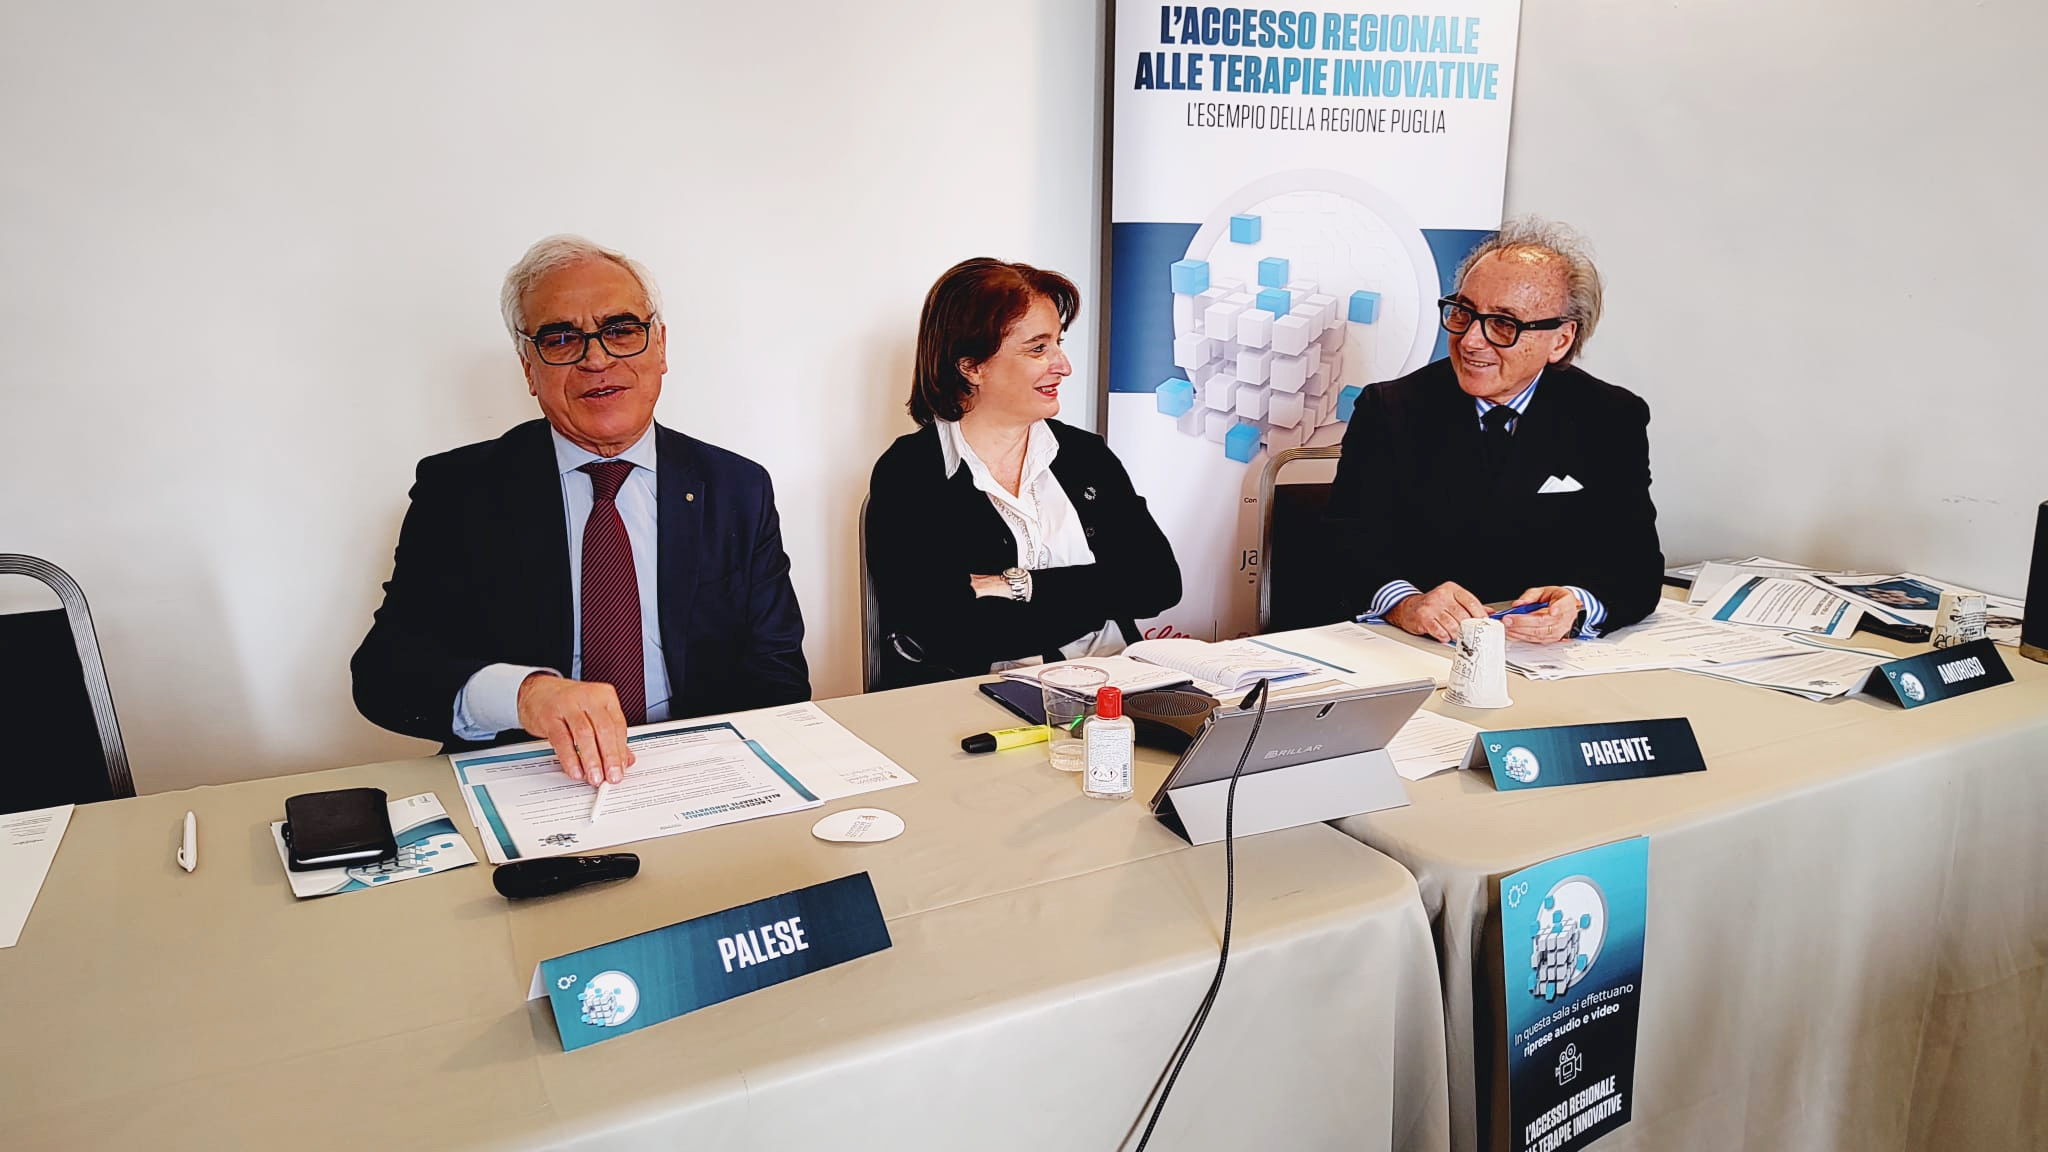 Annamaria Parente - L’accesso regionale alle terapie innovative. L’esempio della Regione Puglia